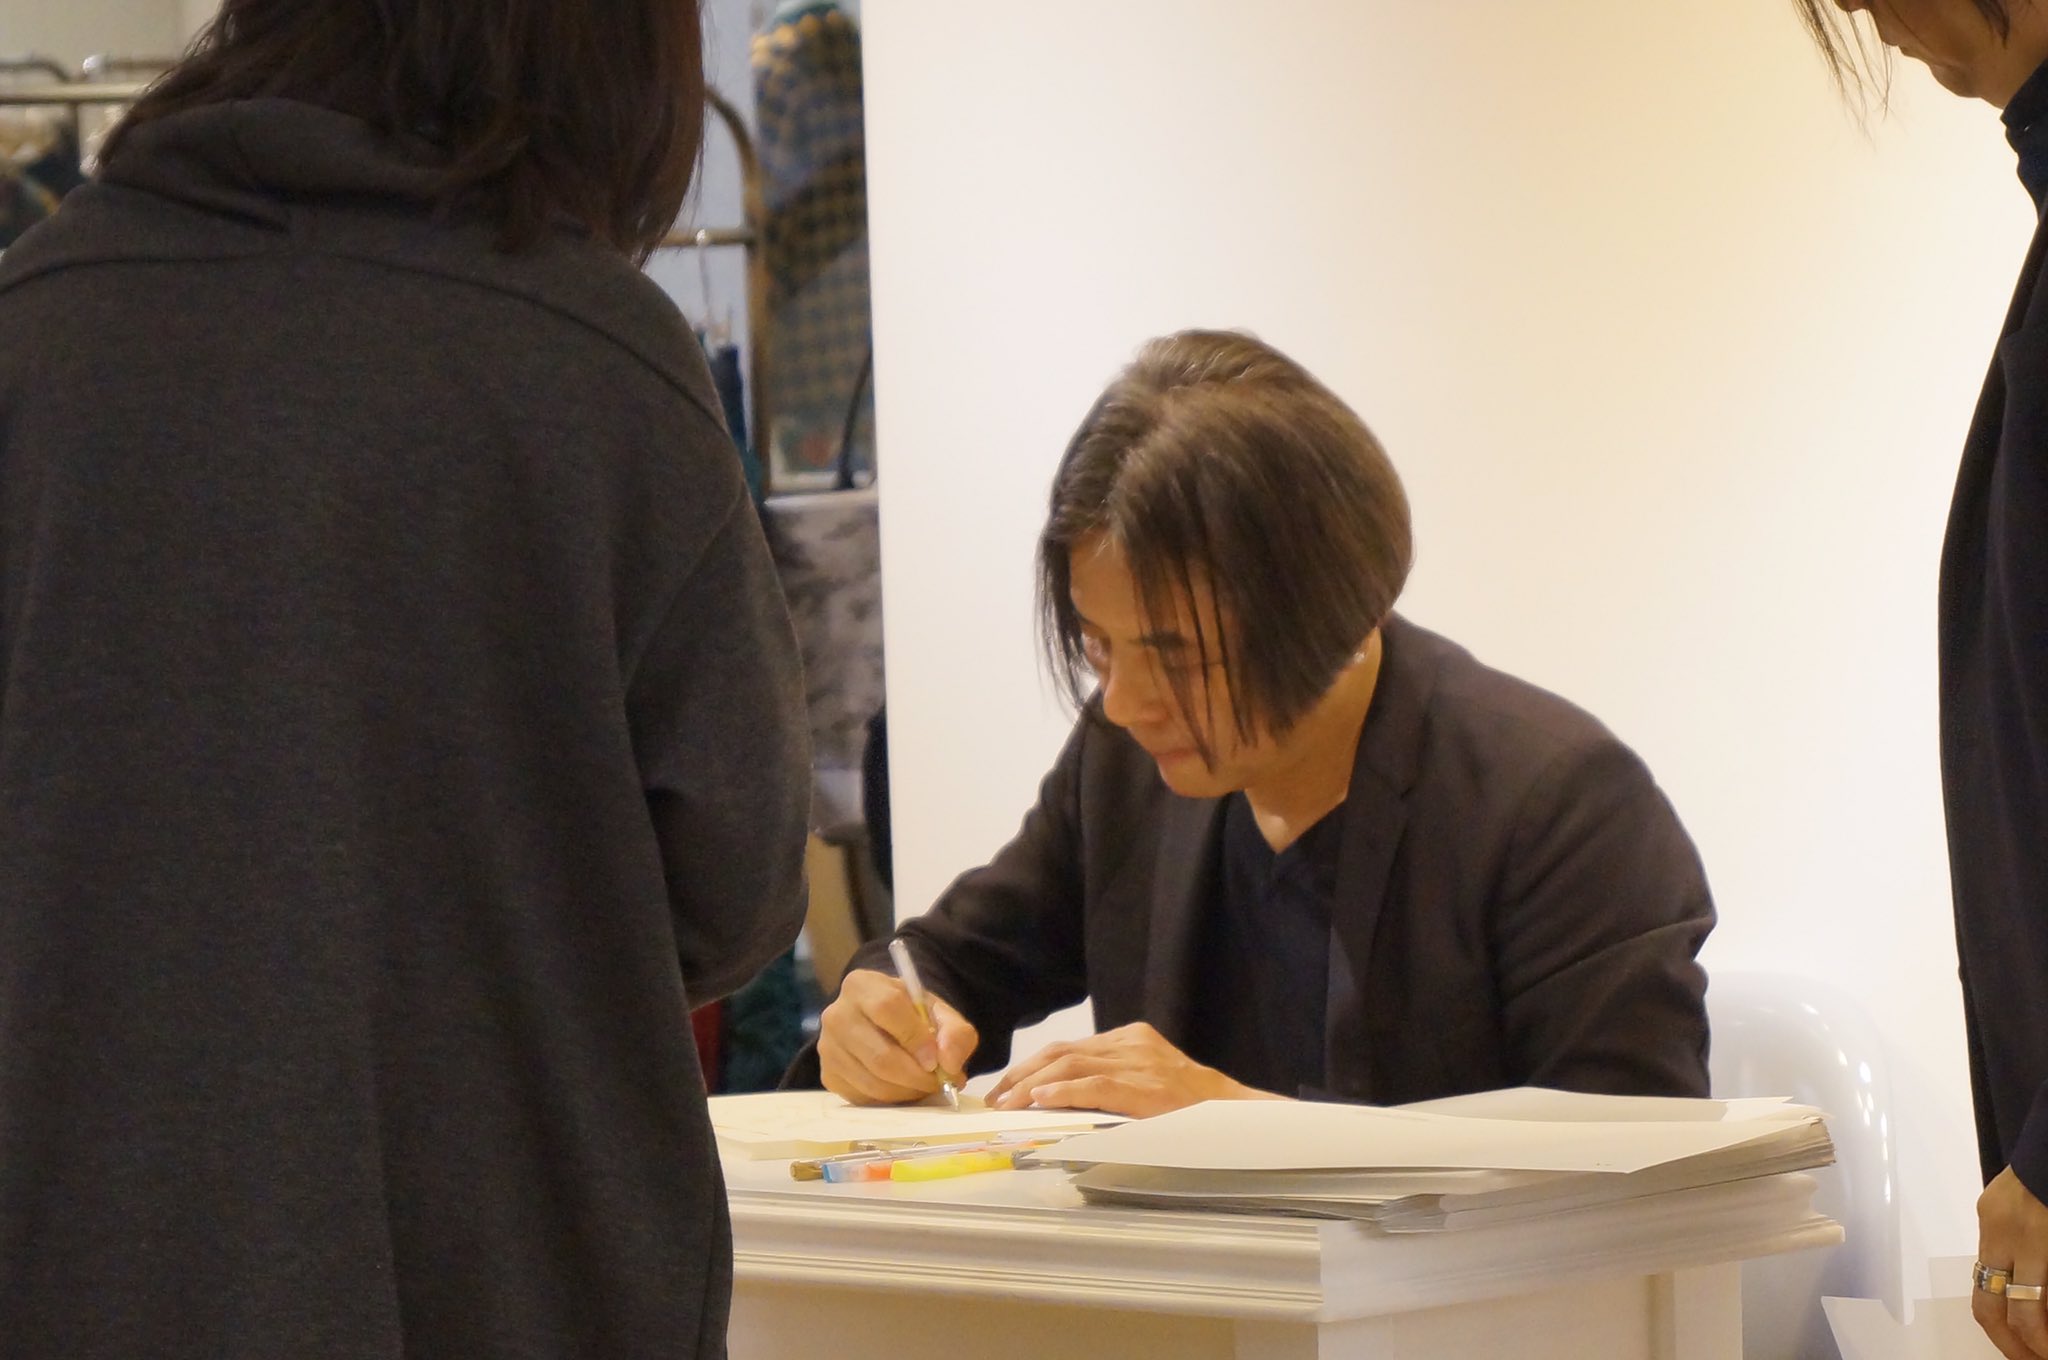 小倉井筒屋スタッフ Atsuro Tayama デザイナー田山 淳朗さんが新館4階に来店中です ファッションのアドバイスやパリコレのお話など直接伺えるチャンス 是非ご来店ください 11月19日 土 午後6時くらいまで